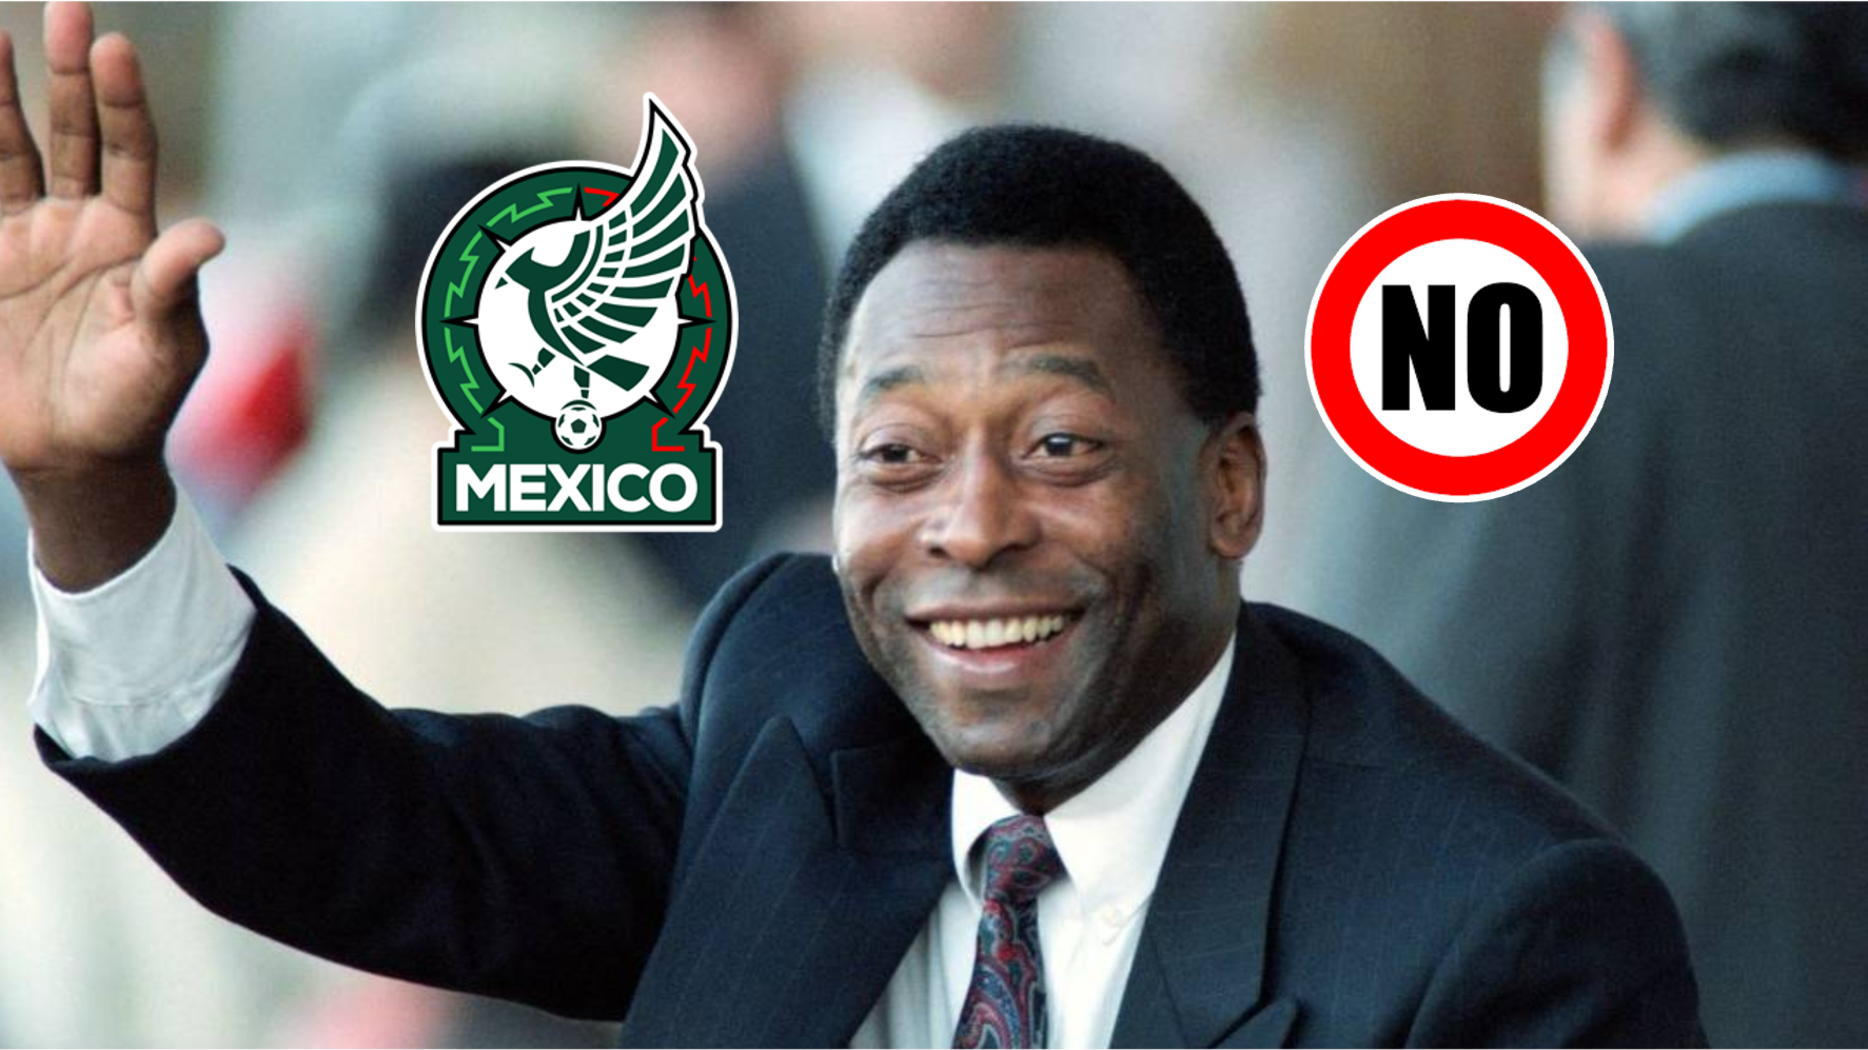 ¿Agrandado? El jugador mexicano que le negó el saludo a Pelé